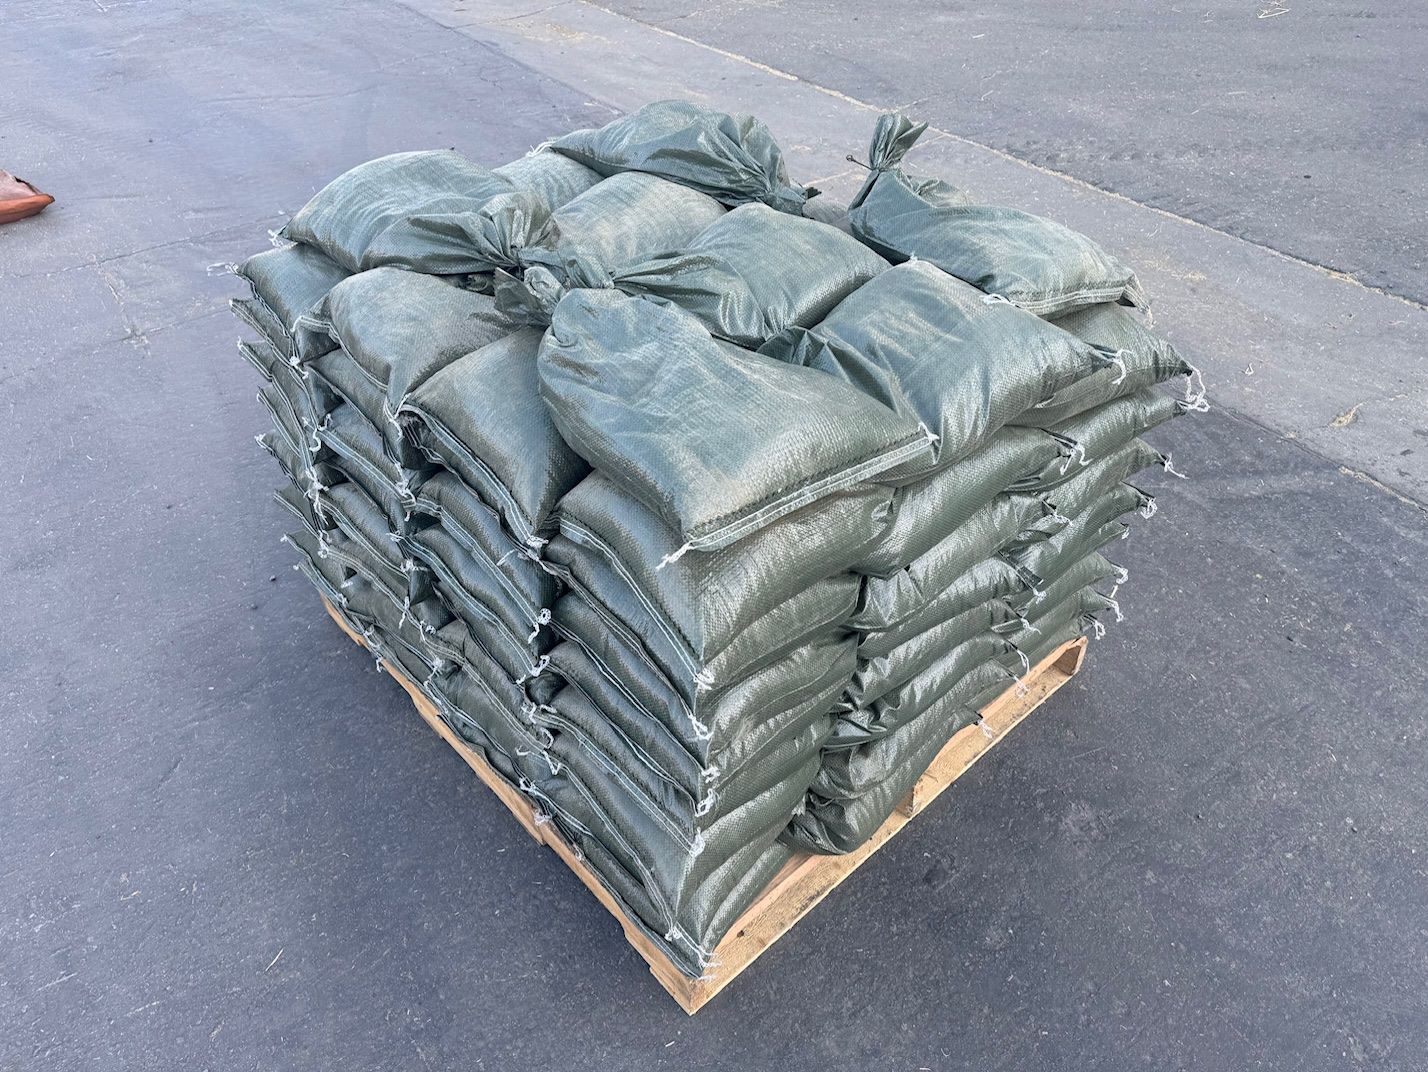 6 Mil Contractor Bags - Heavy Duty 100 lb Capacity - Sandbaggy